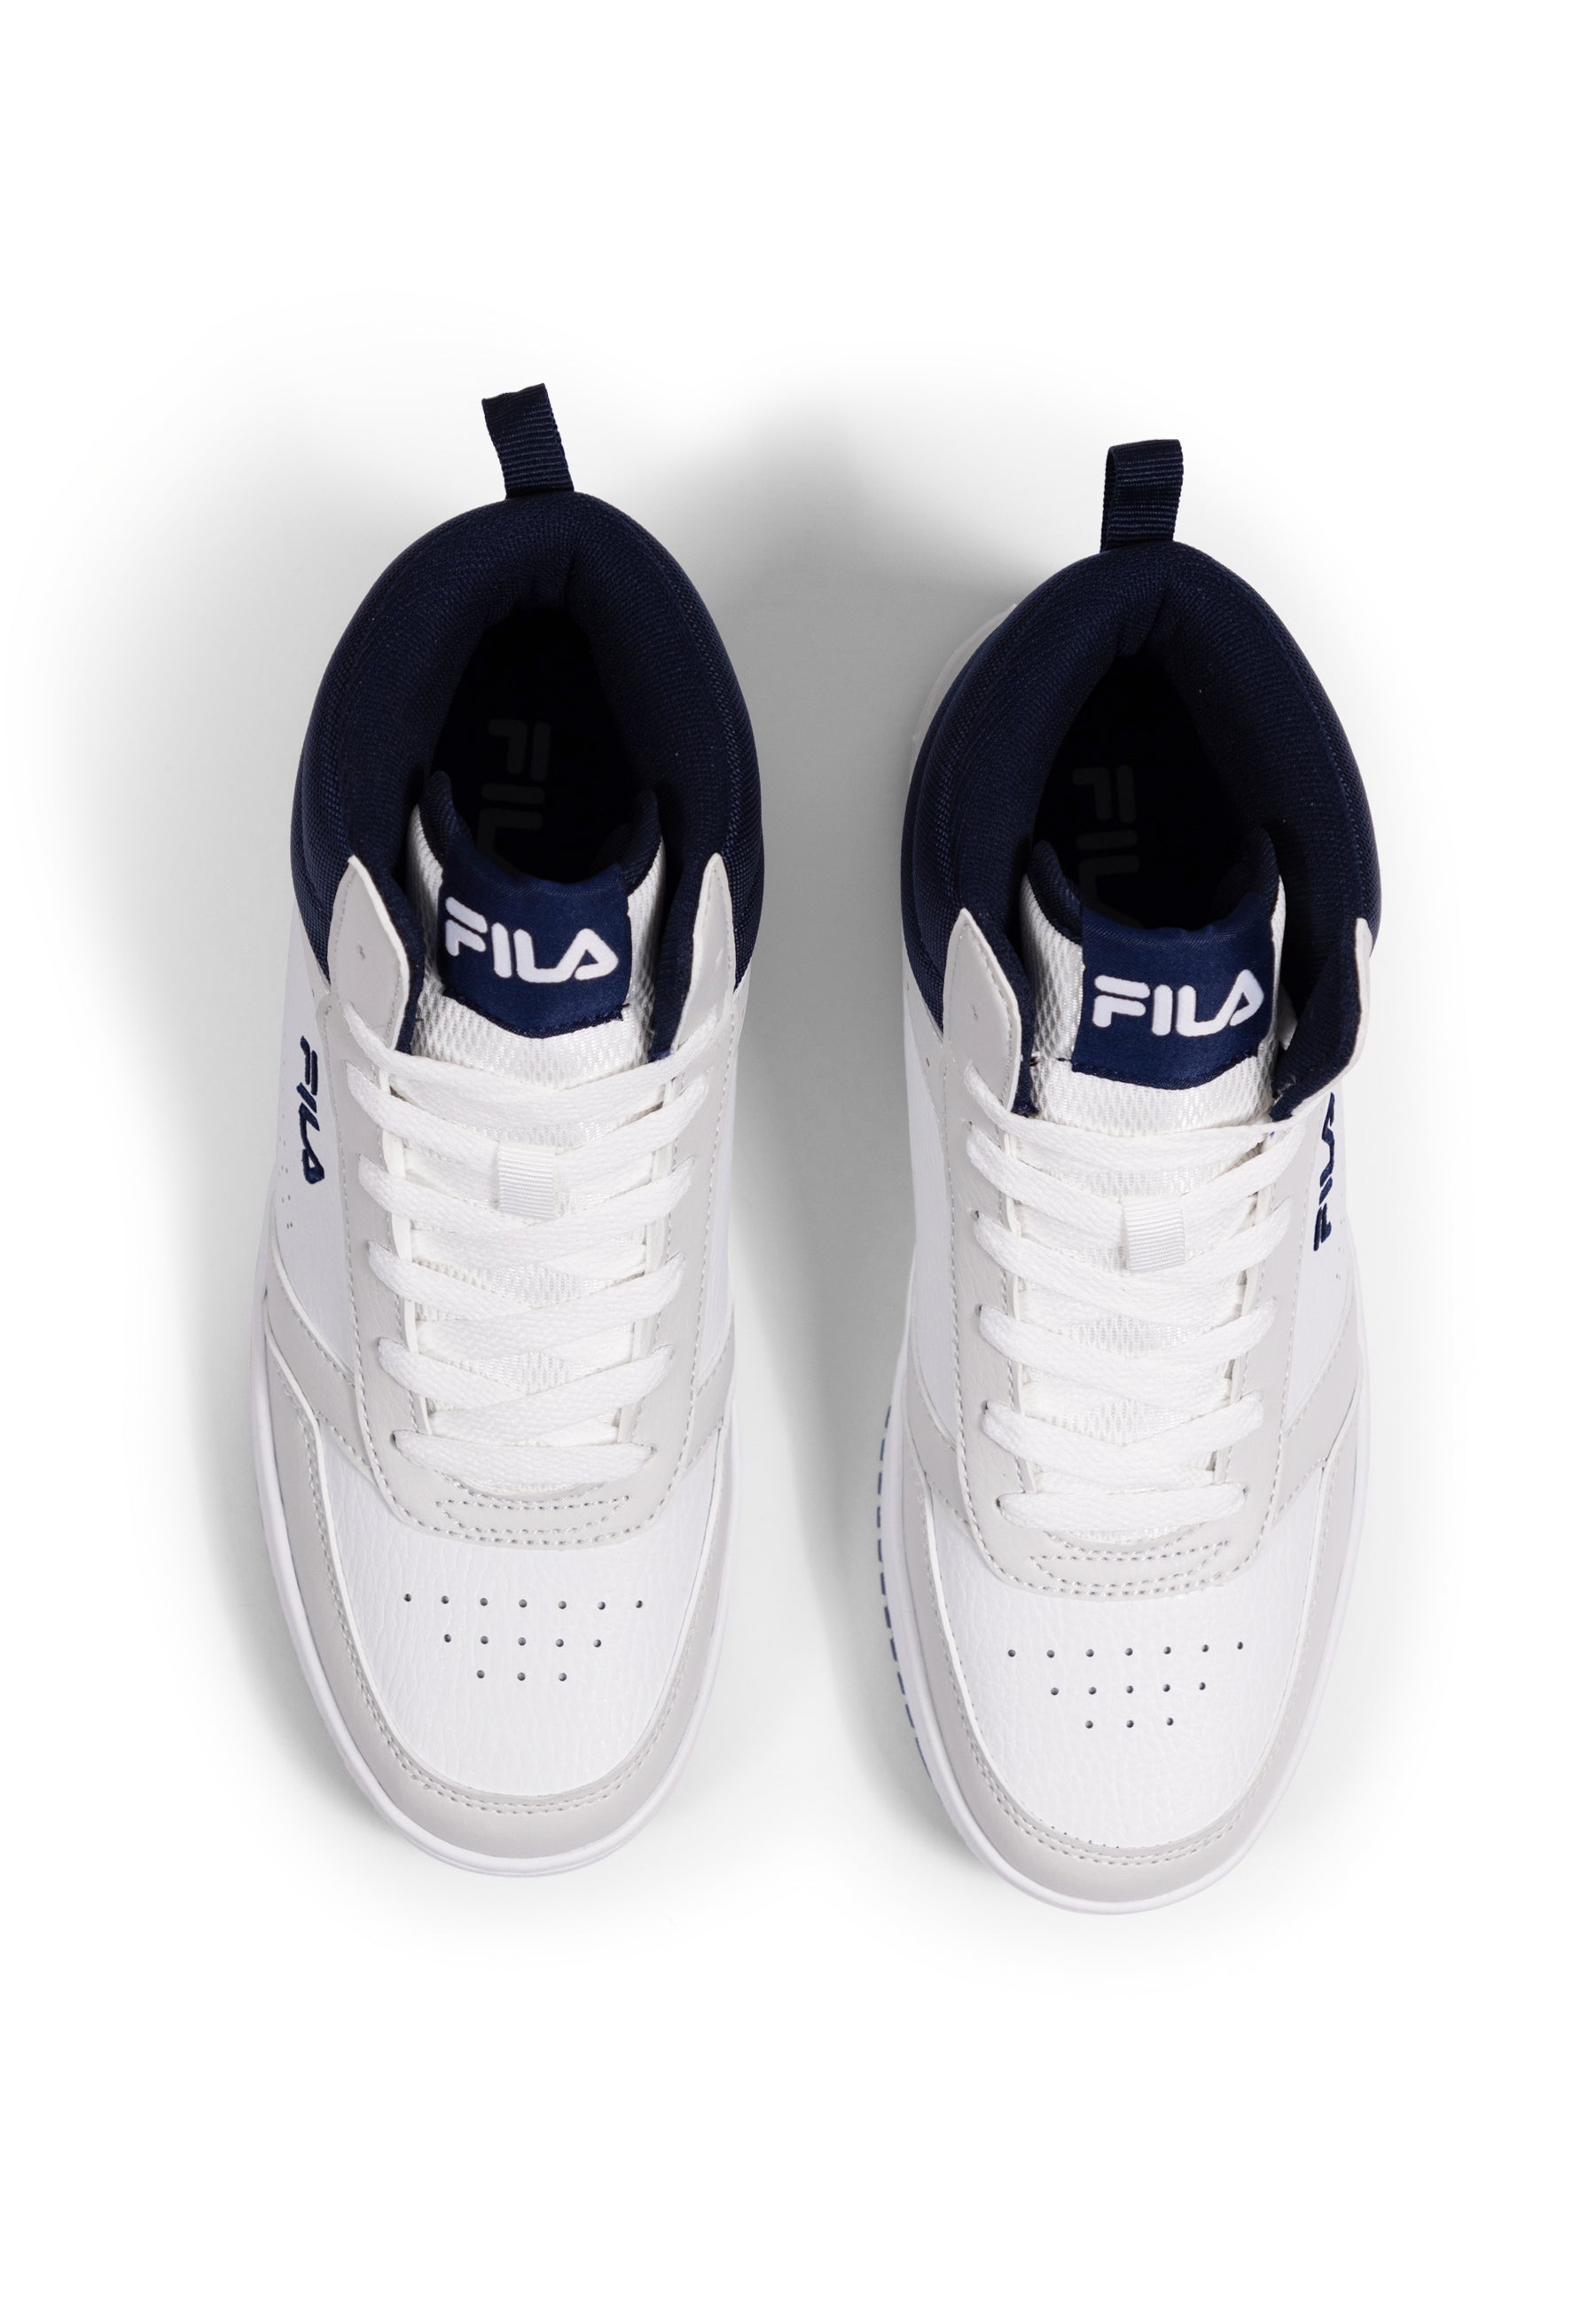 Rega Mid in White-Fila Navy Sneakers Fila   